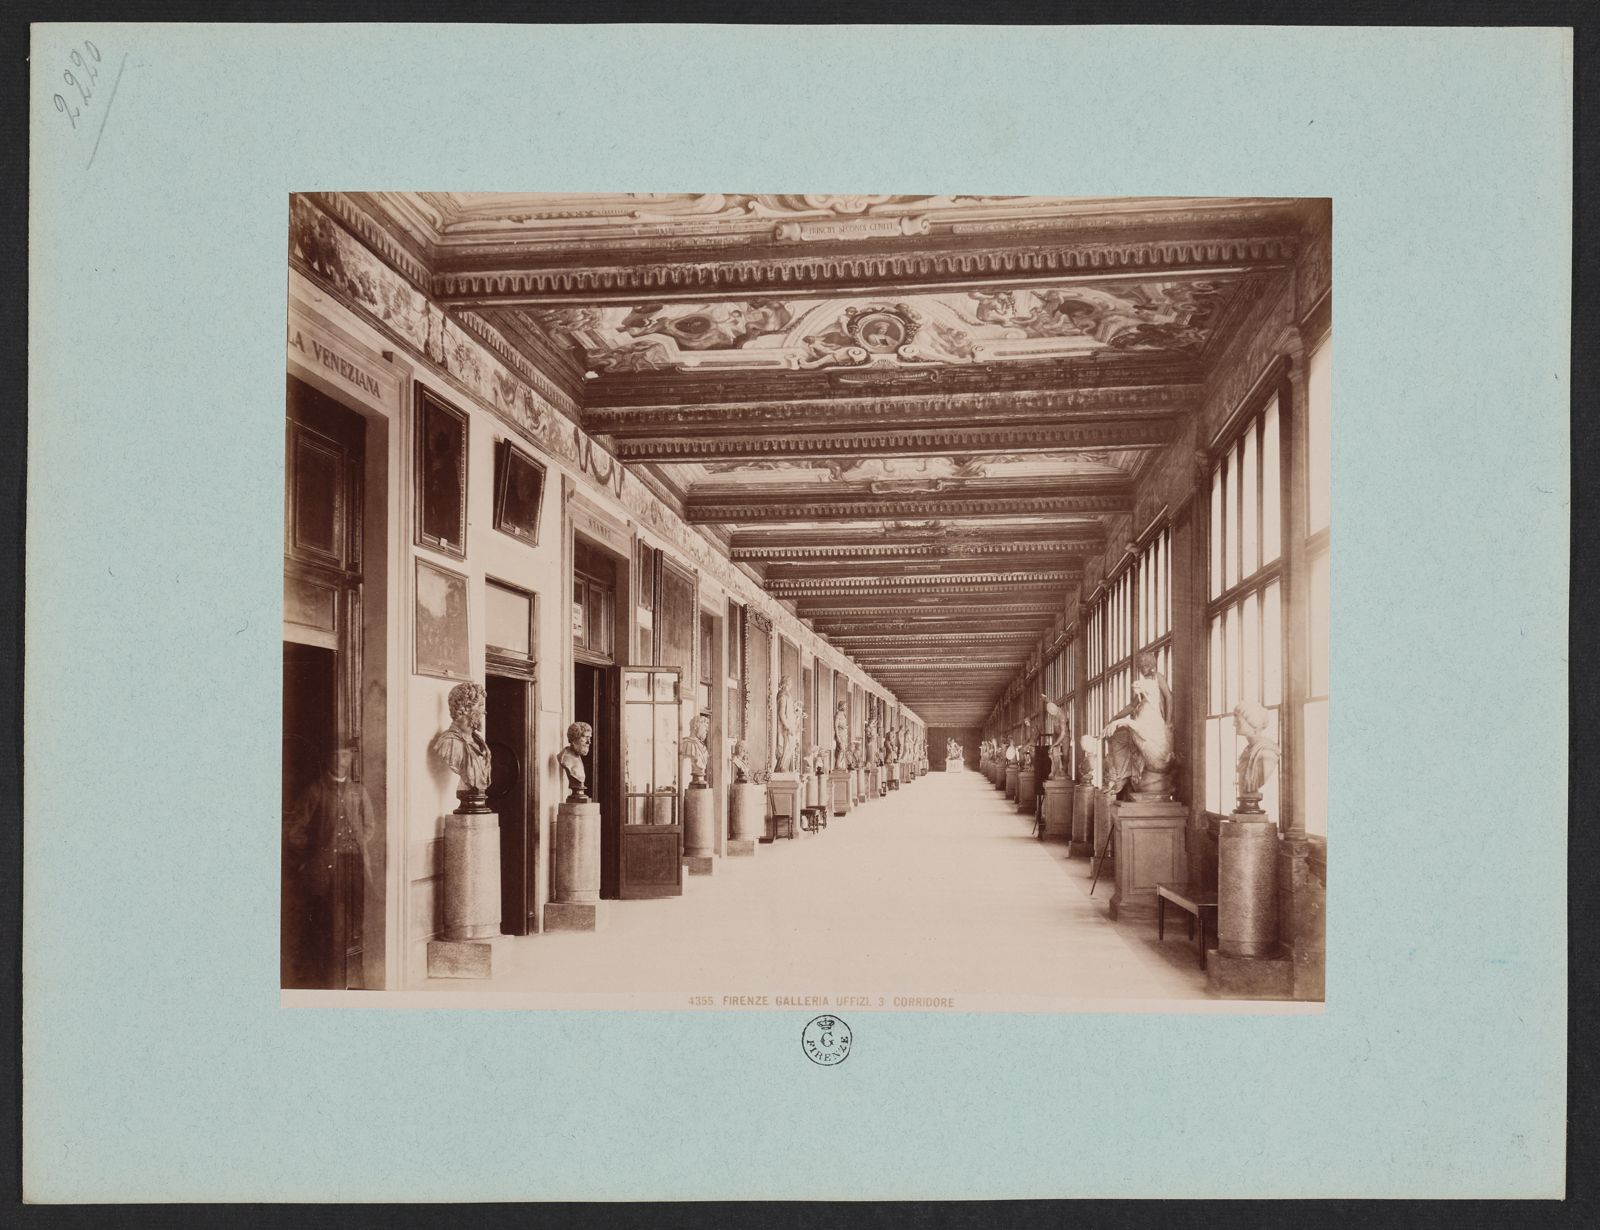 Terzo Corridoio degli Uffizi Regio Archivio Fotografico degli Uffizi